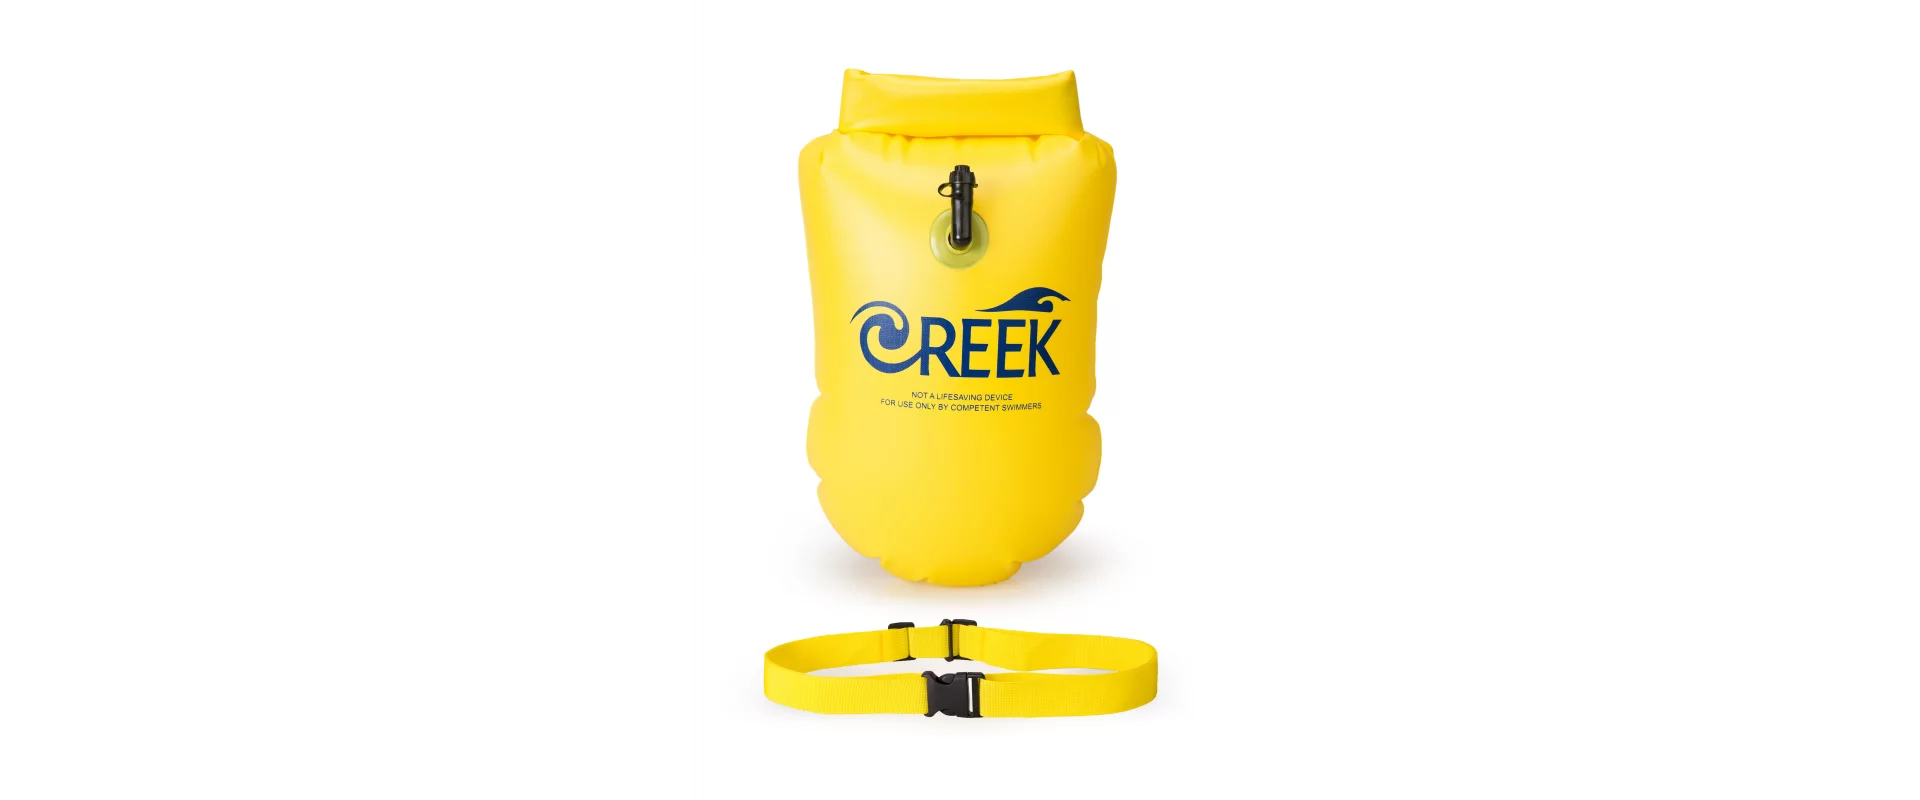 Creek Buoy желтый / Буй для плавания с герметичным отсеком